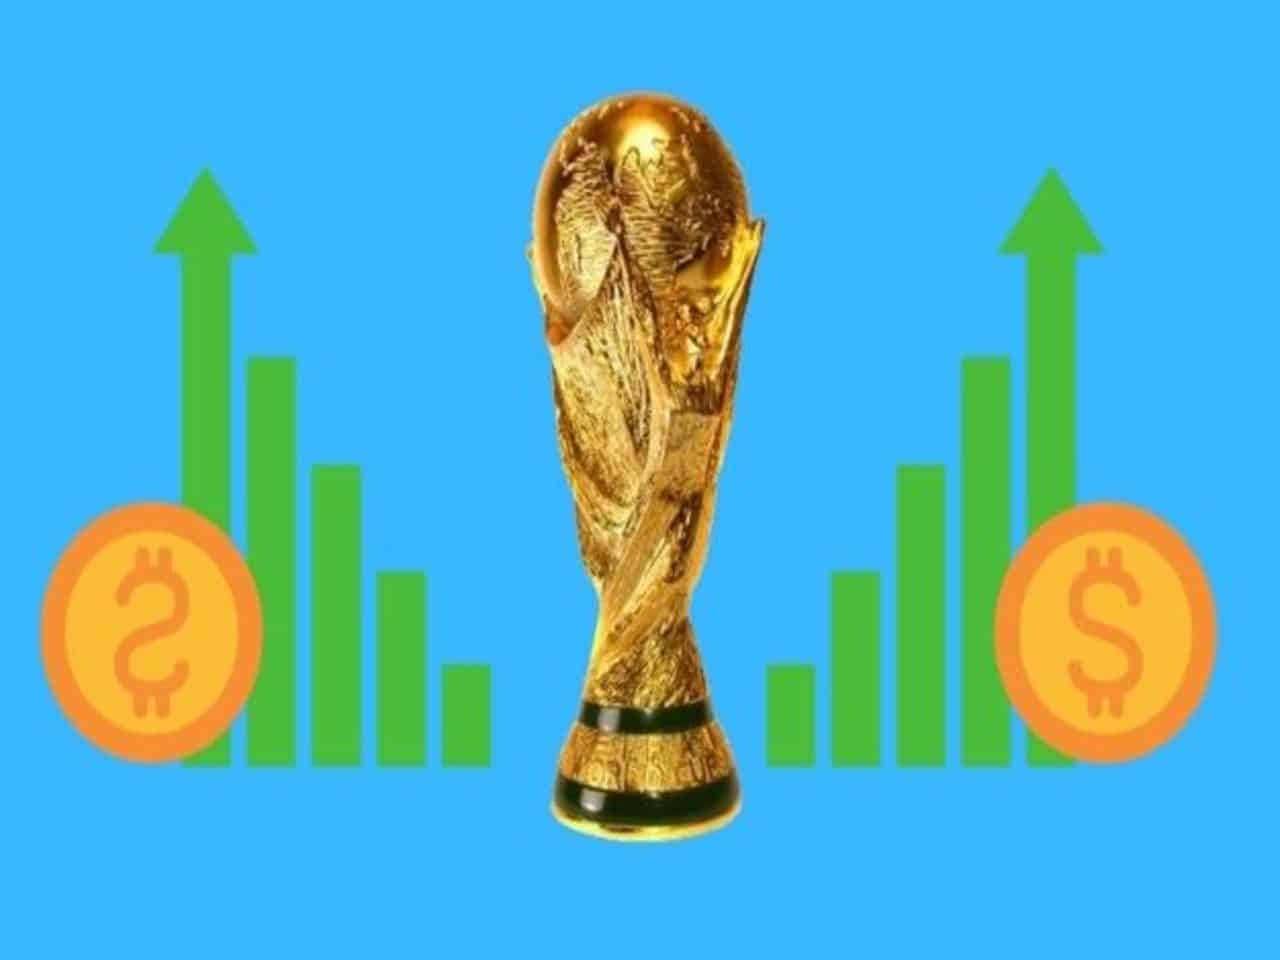 Copa do Mundo: 8 dicas para preparar o seu comércio